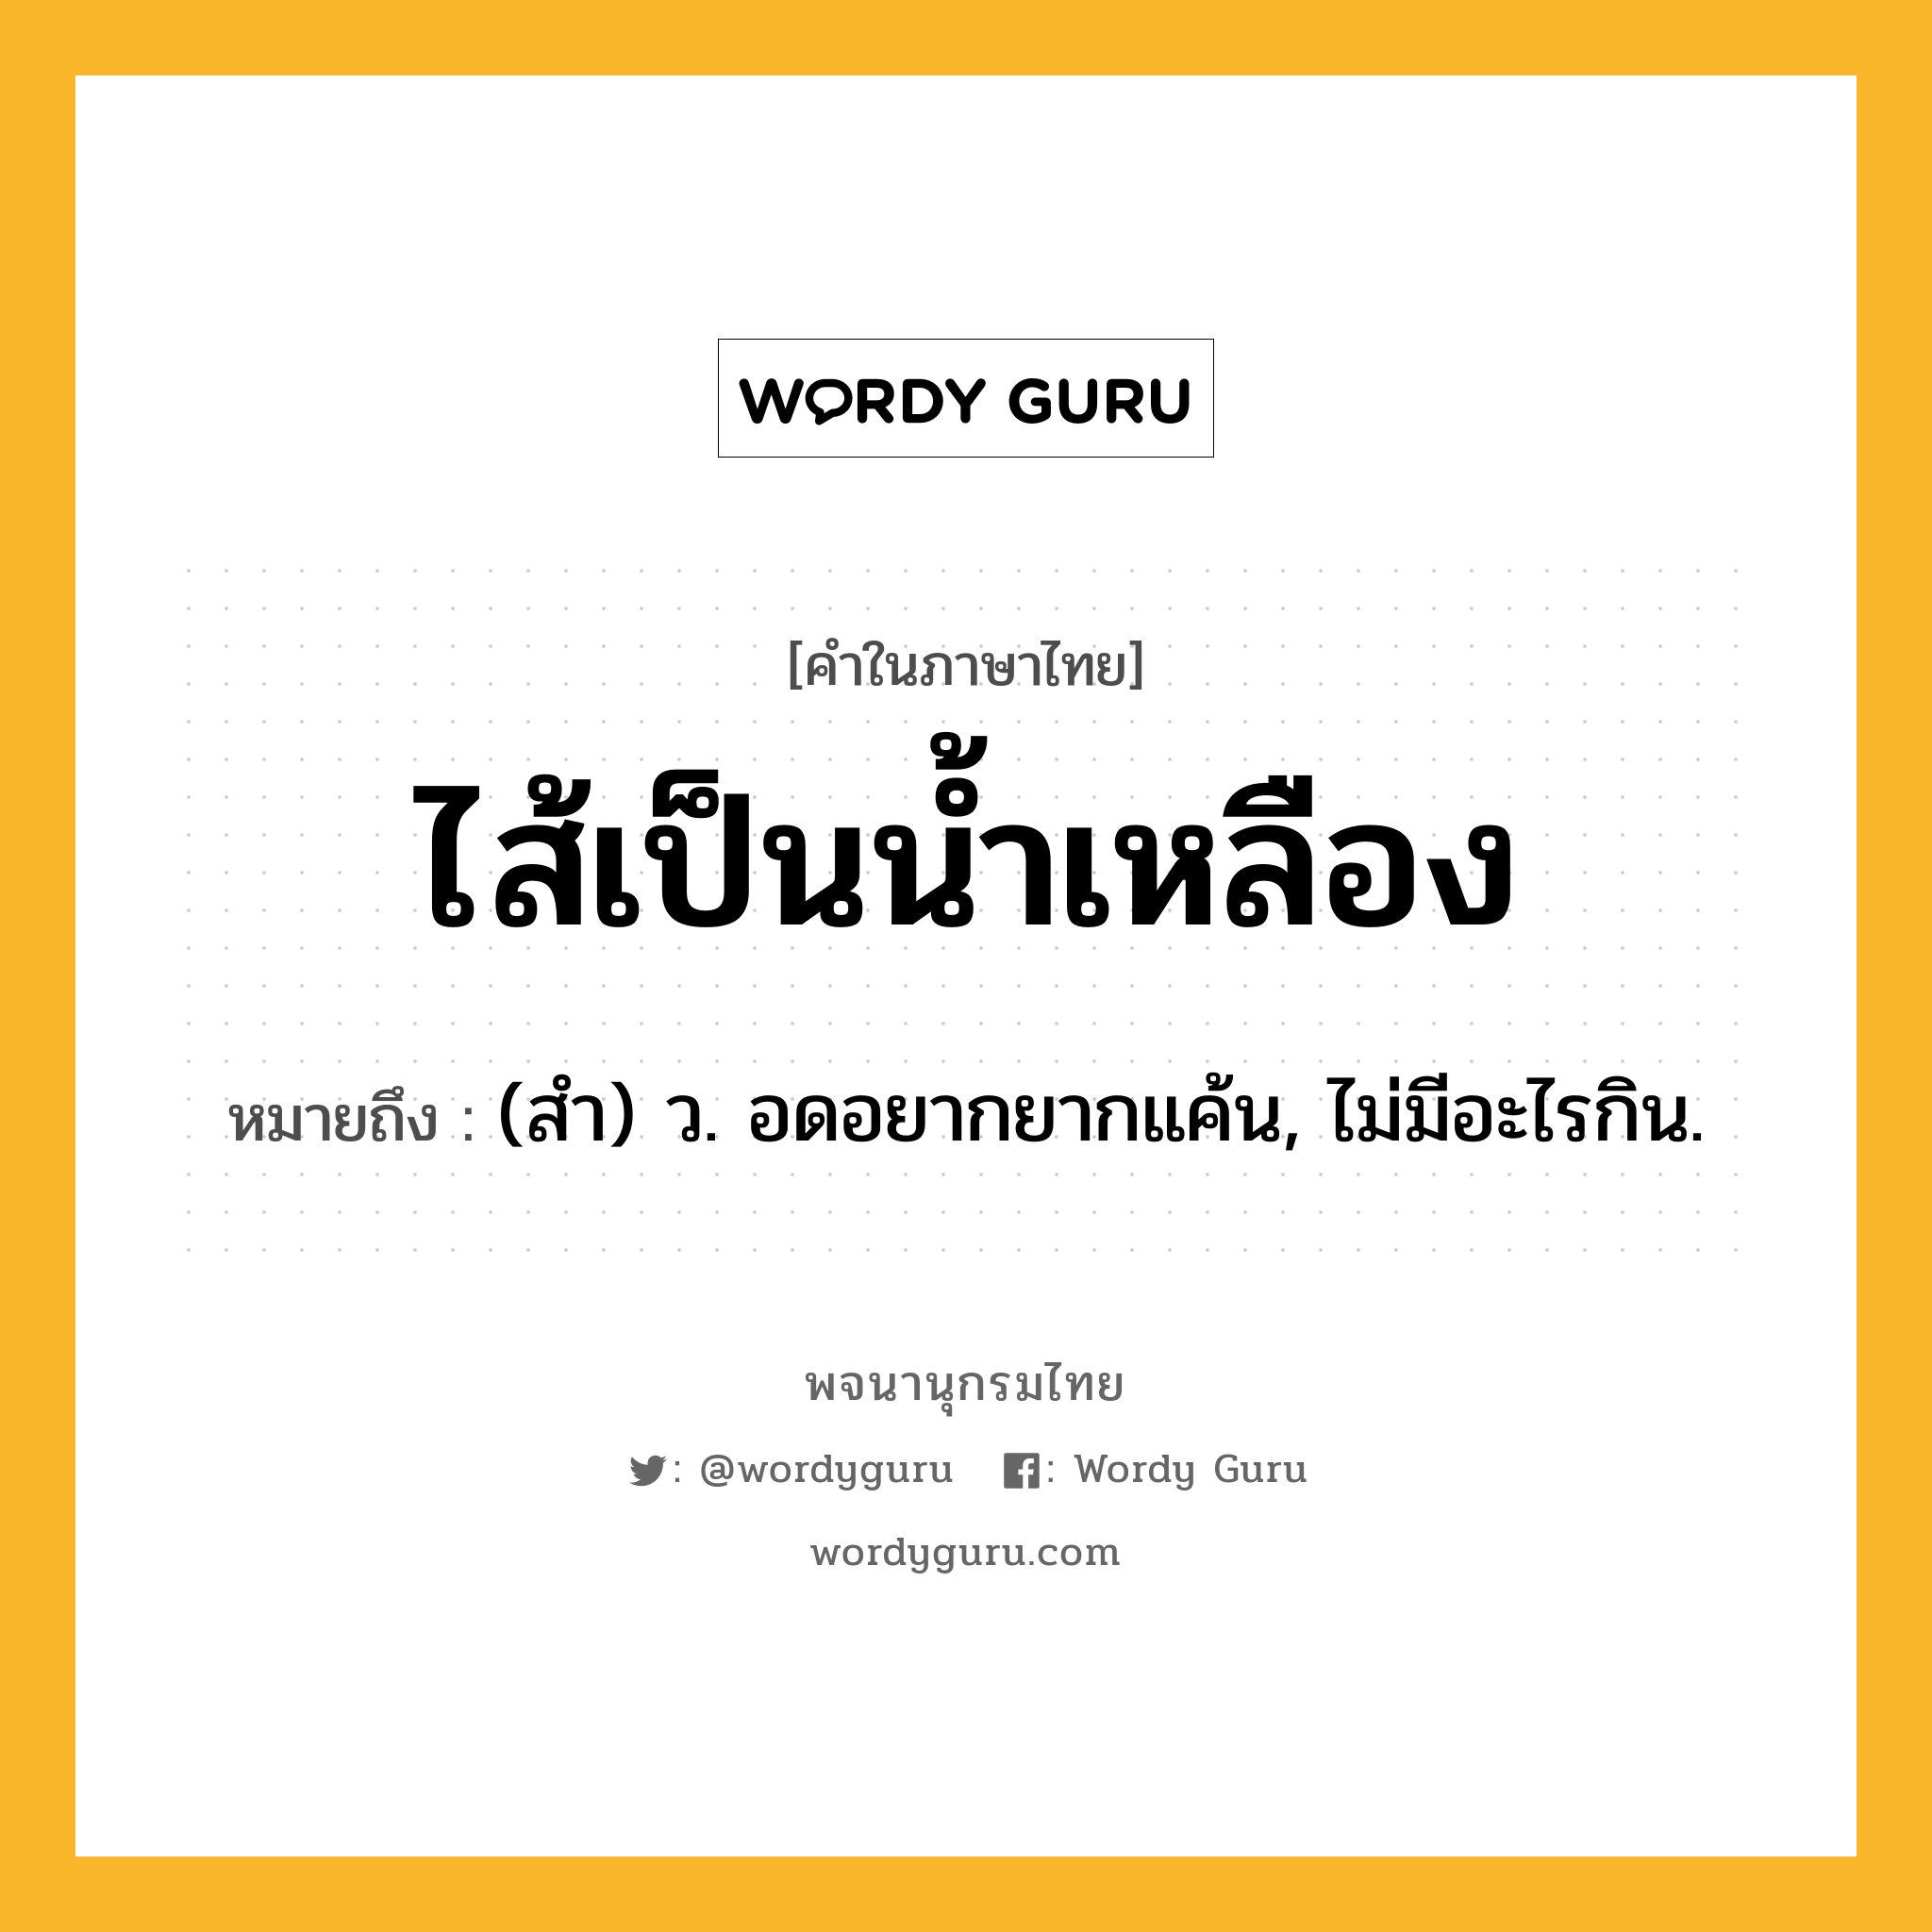 ไส้เป็นน้ำเหลือง ความหมาย หมายถึงอะไร?, คำในภาษาไทย ไส้เป็นน้ำเหลือง หมายถึง (สํา) ว. อดอยากยากแค้น, ไม่มีอะไรกิน.